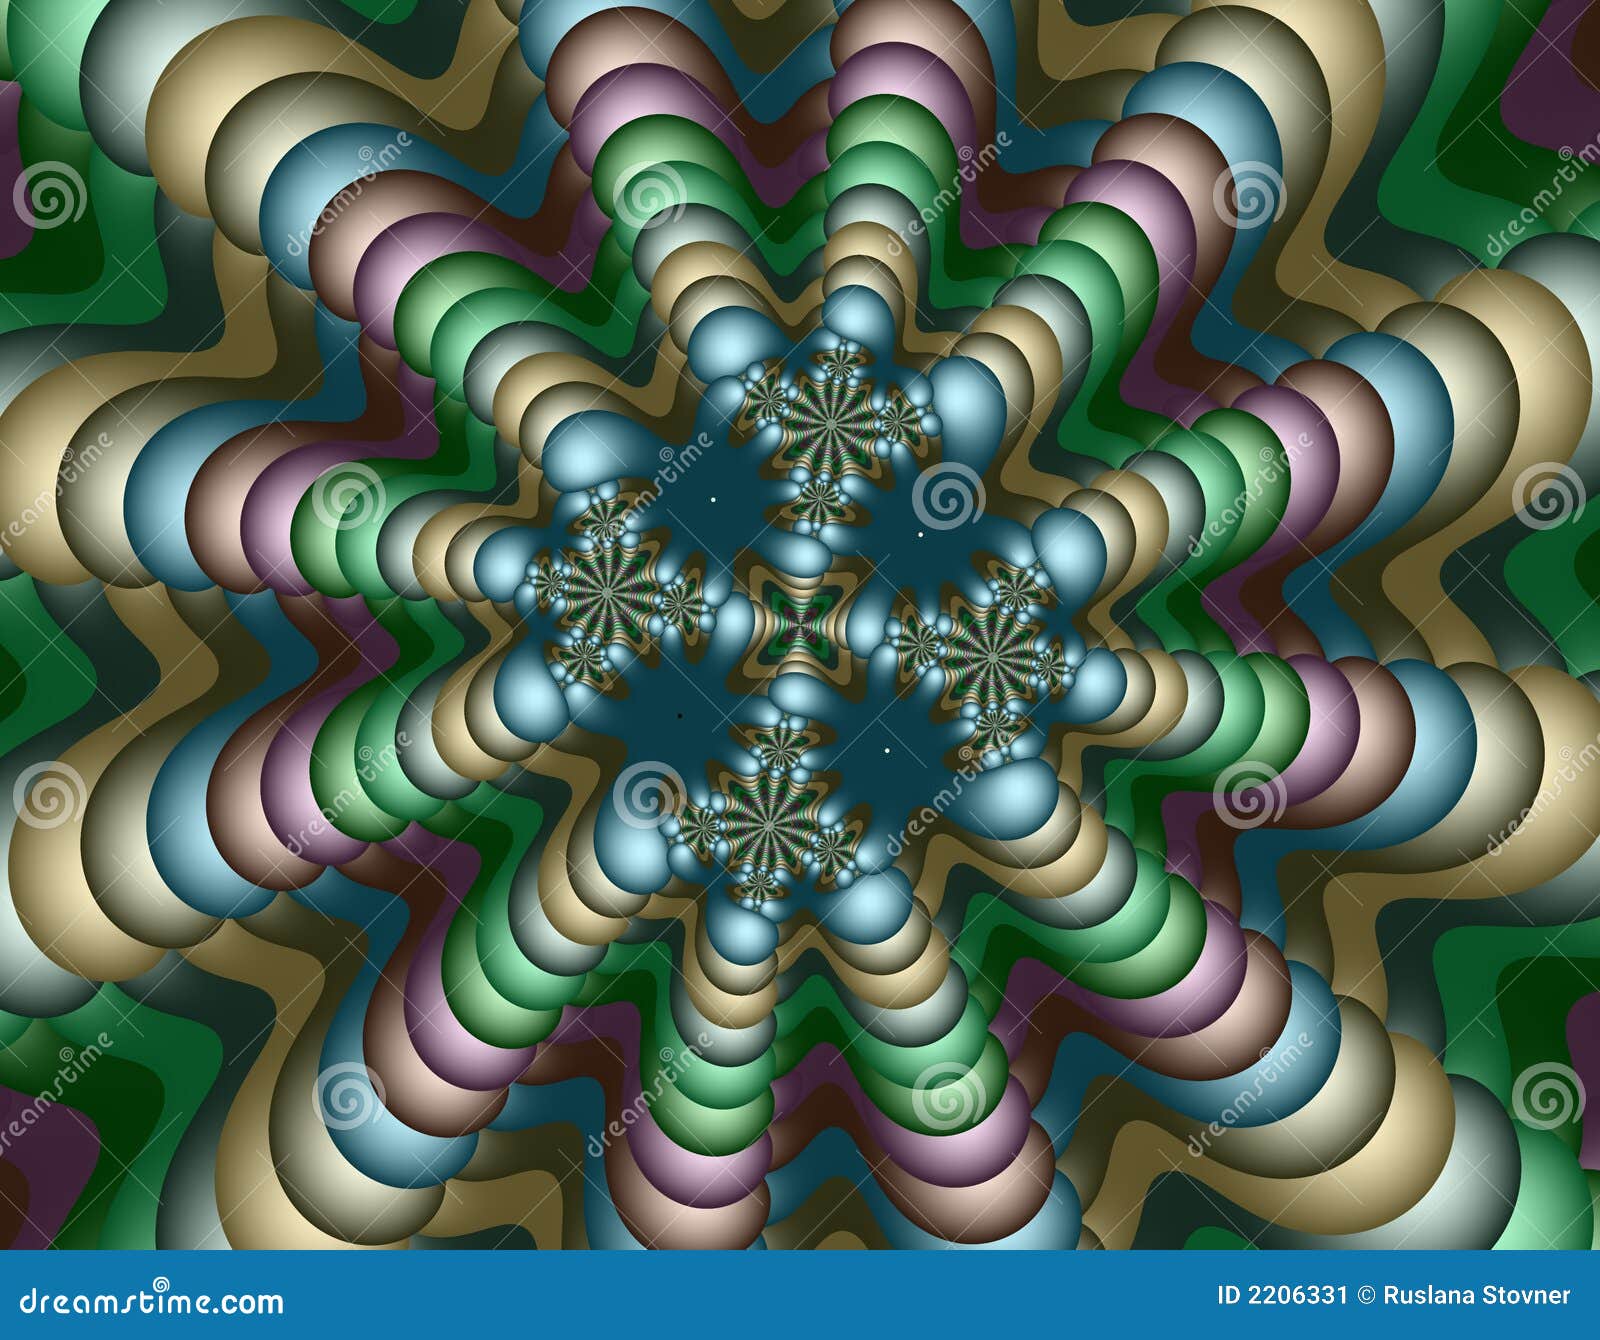 alien-fractal-art-2206331.jpg